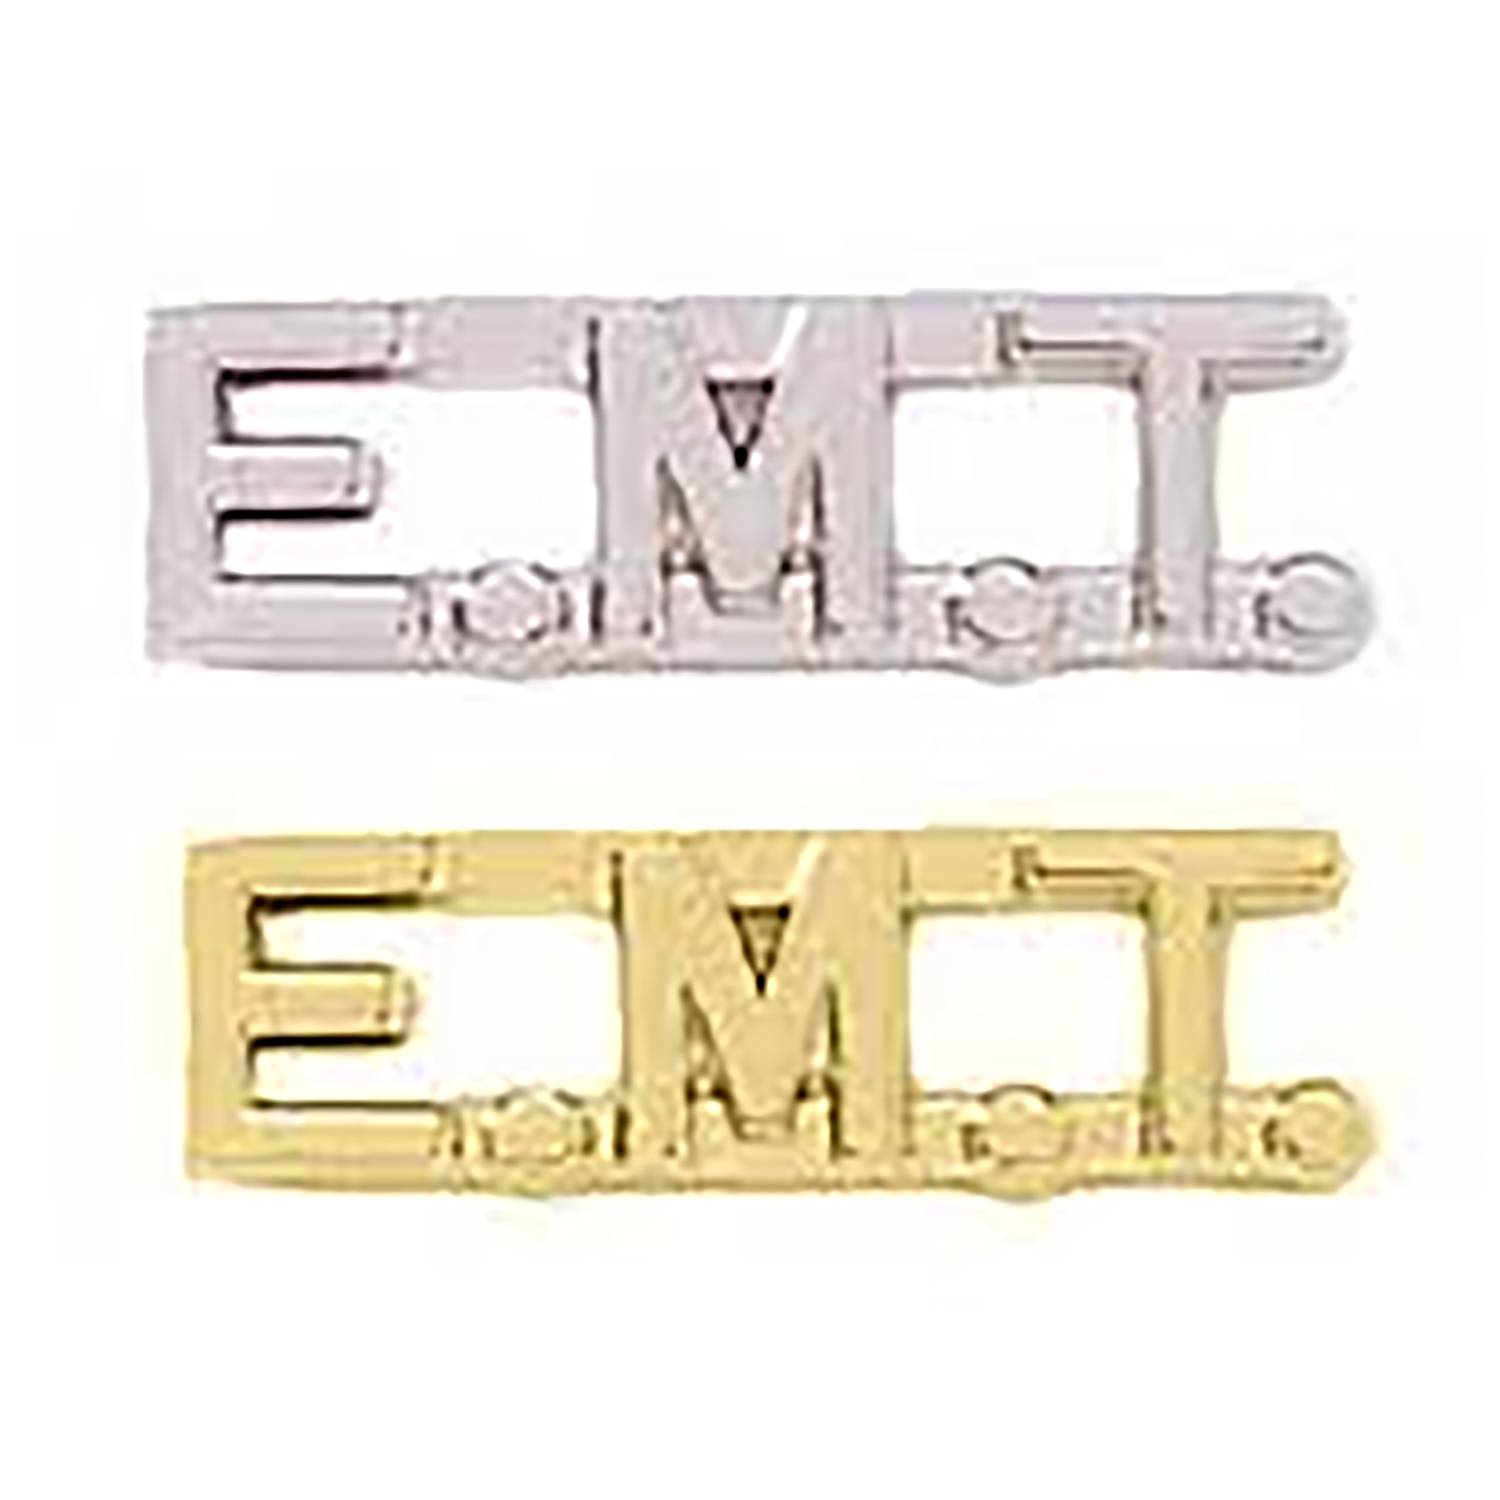 Premier Emblem EMT Cut Out Letters